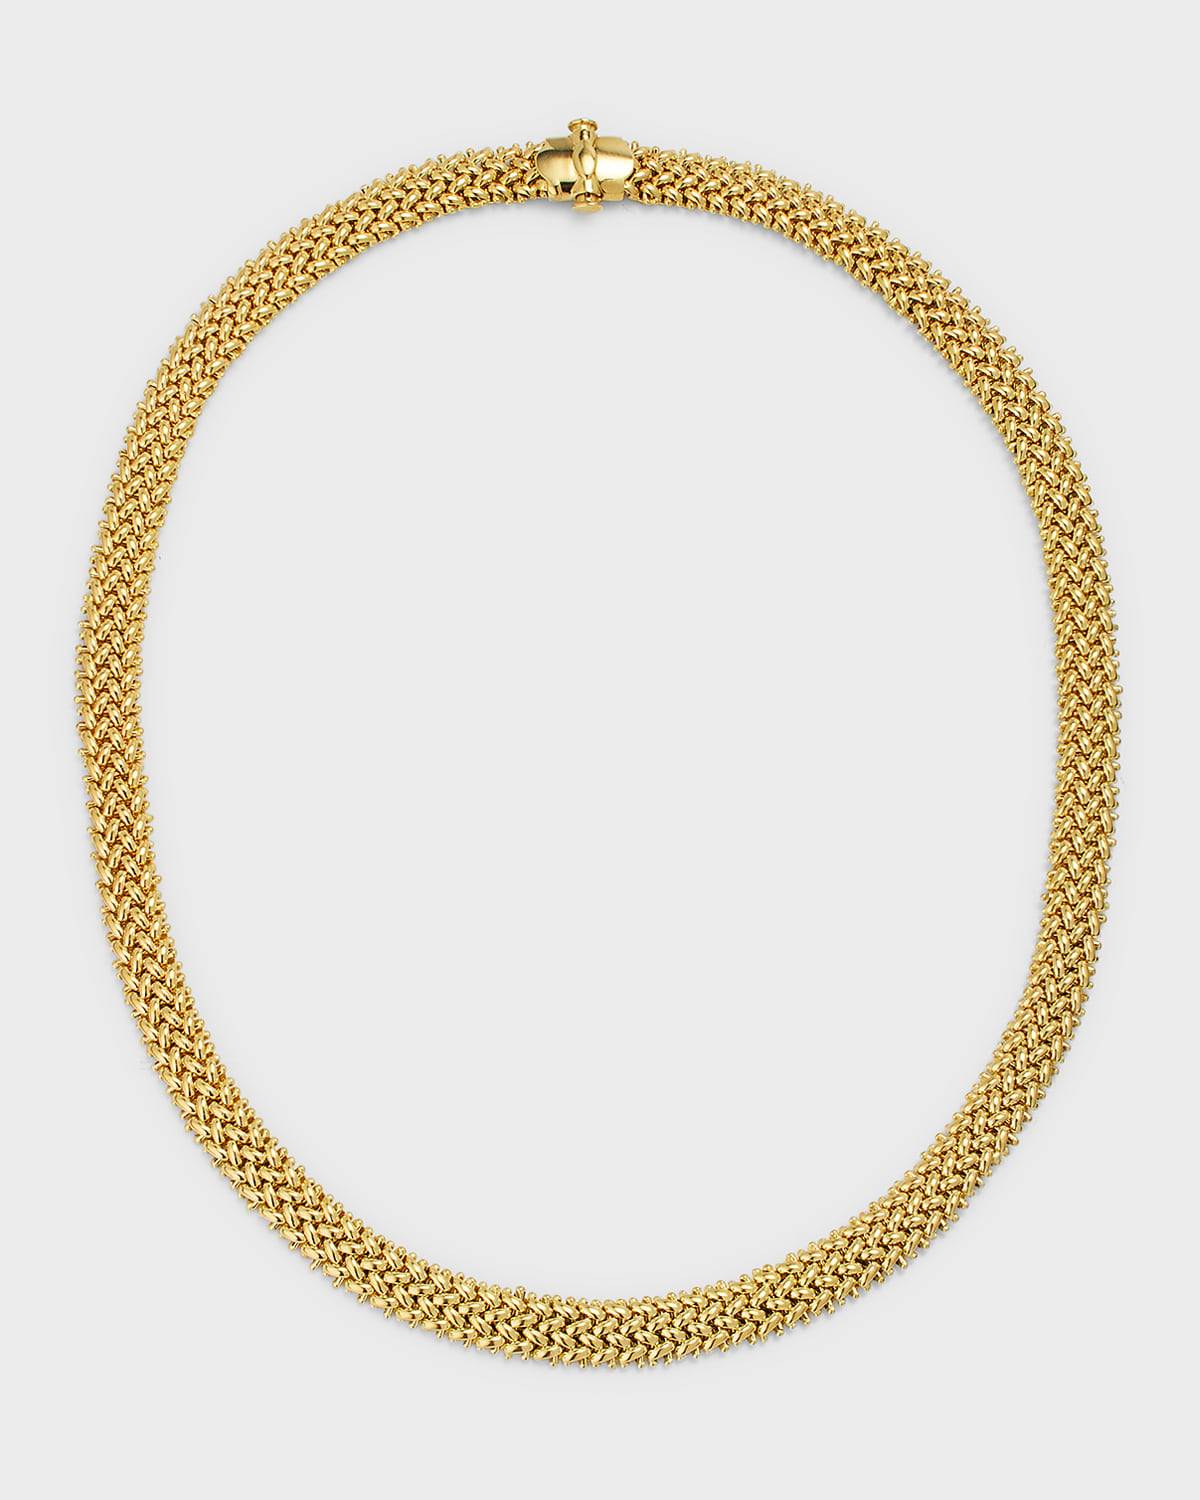 18K Yellow Gold Via Ornato Chicco Chain Necklace, 7mm